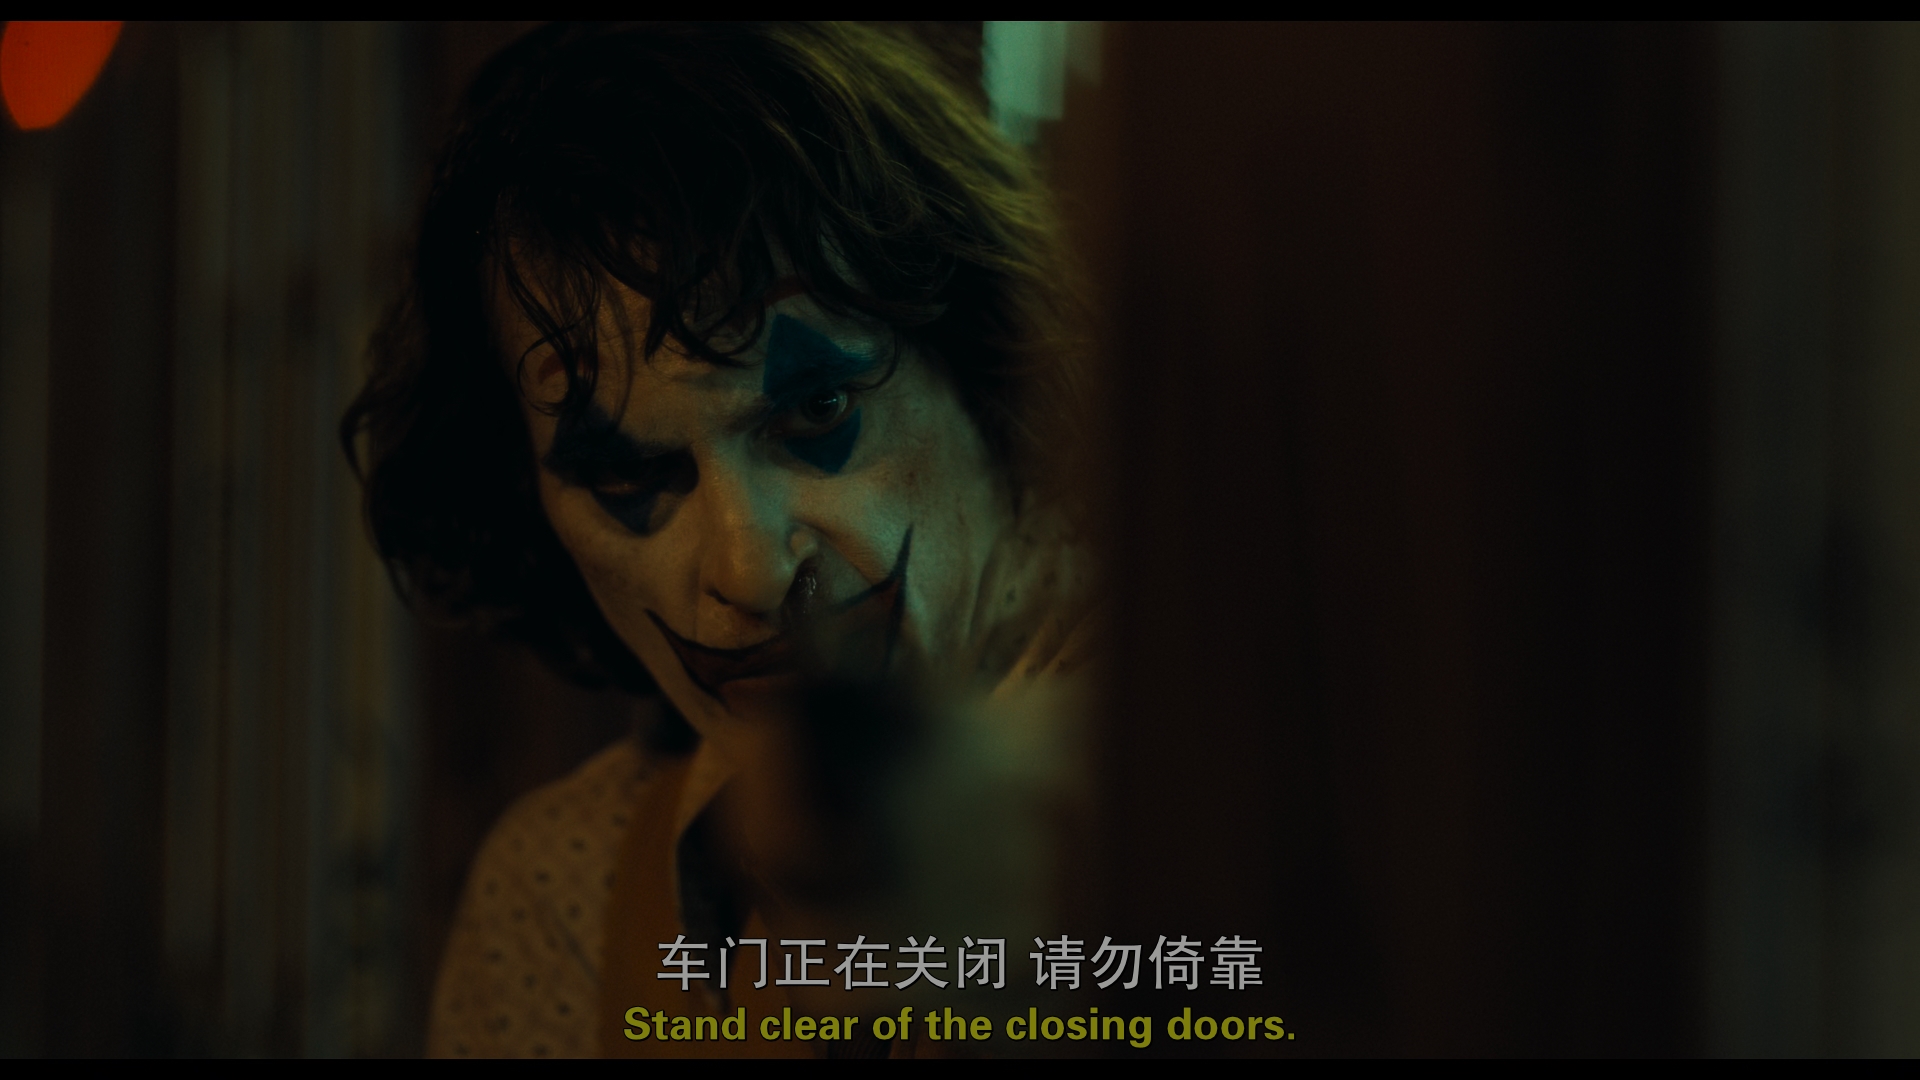 [小丑].Joker.2019.UHD.BluRay.2160p.HEVC.TrueHD.7.1-LKReborn@CHDBits      53.17G-7.jpg